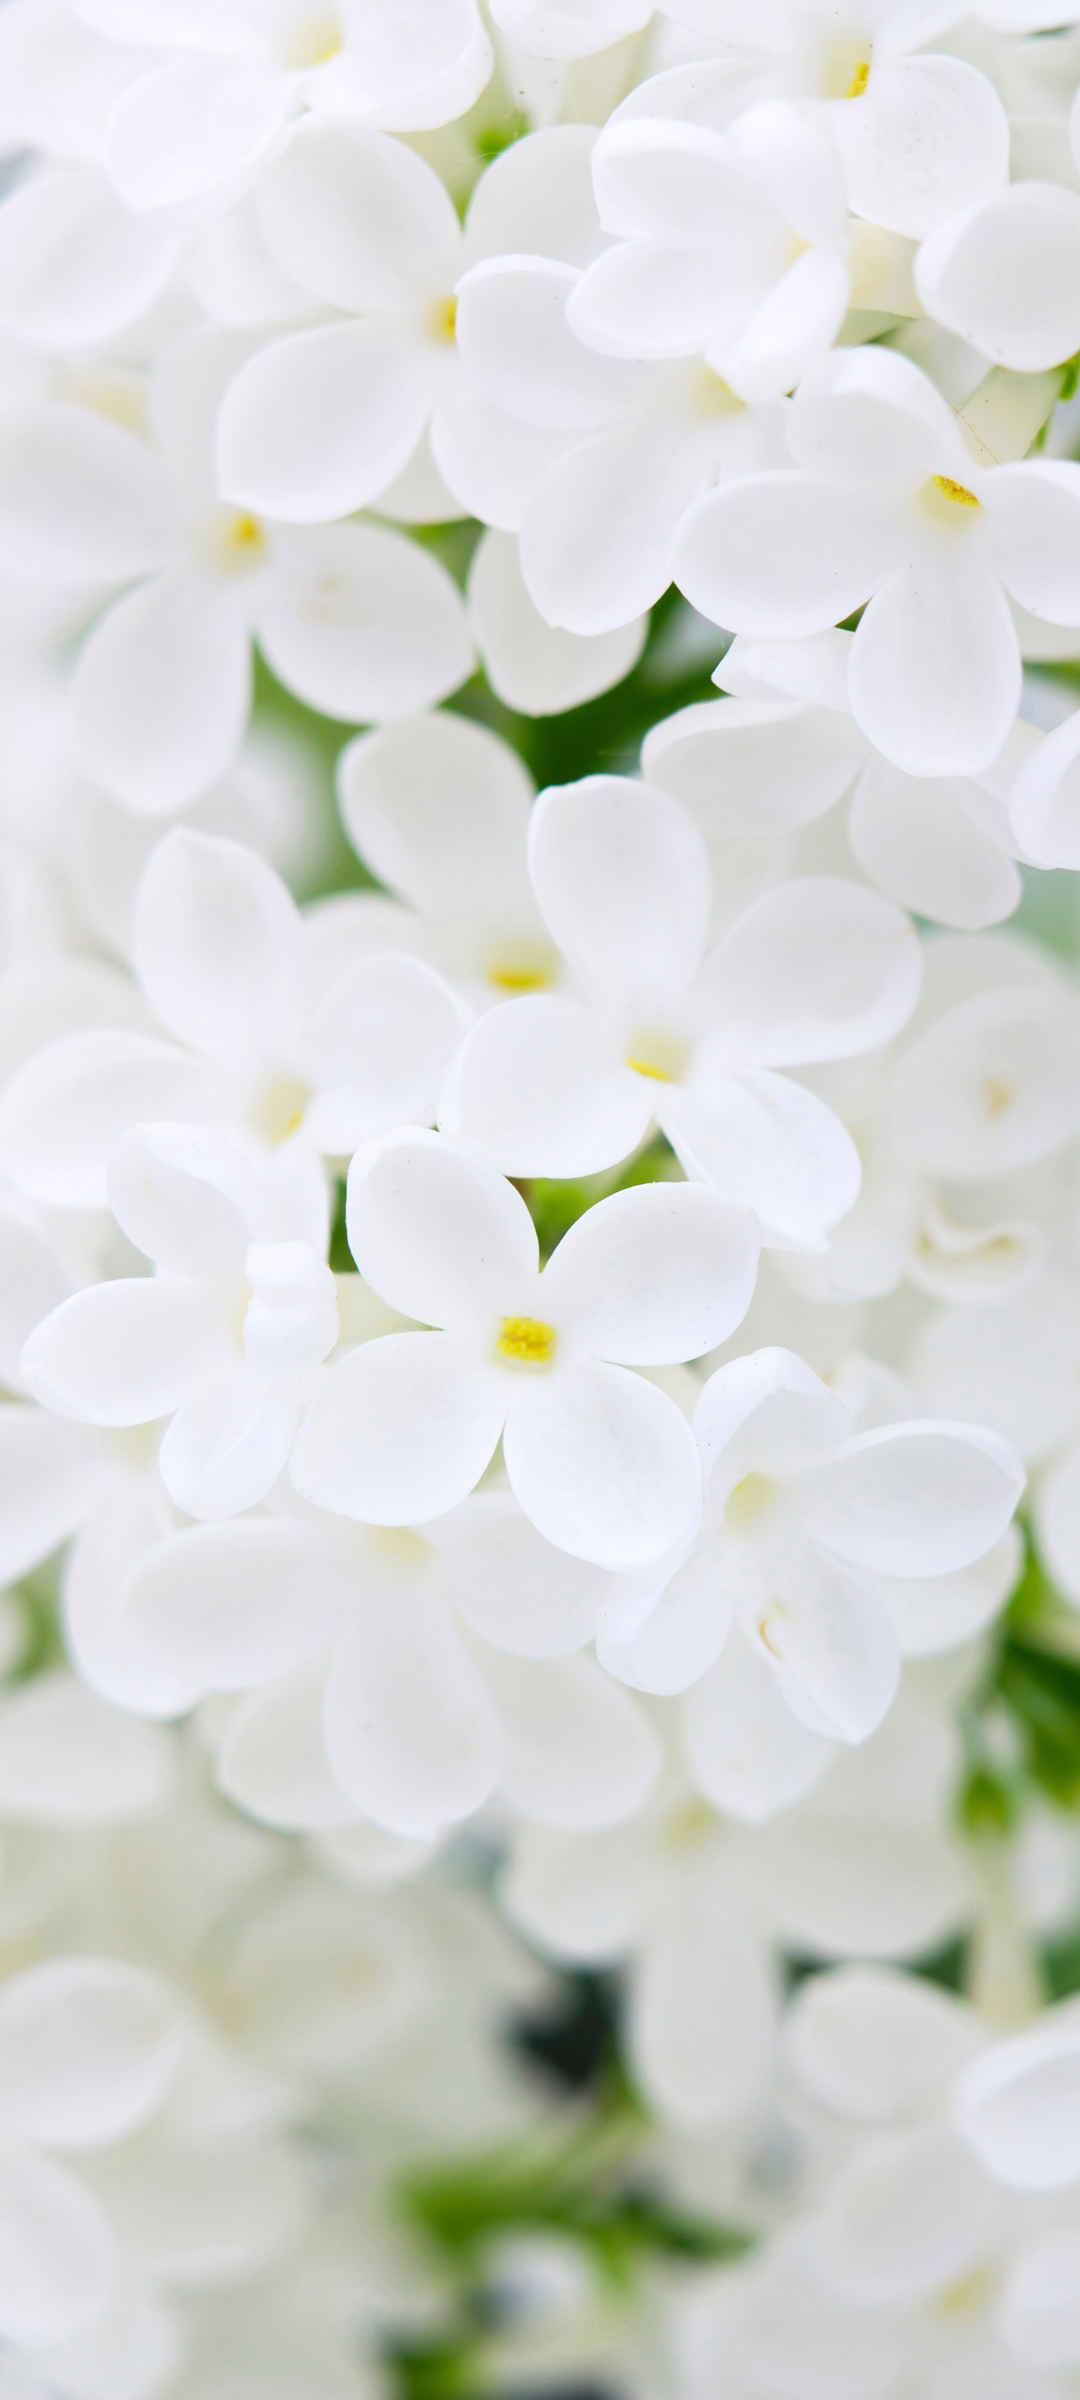 白色鲜花花瓣高清壁纸-